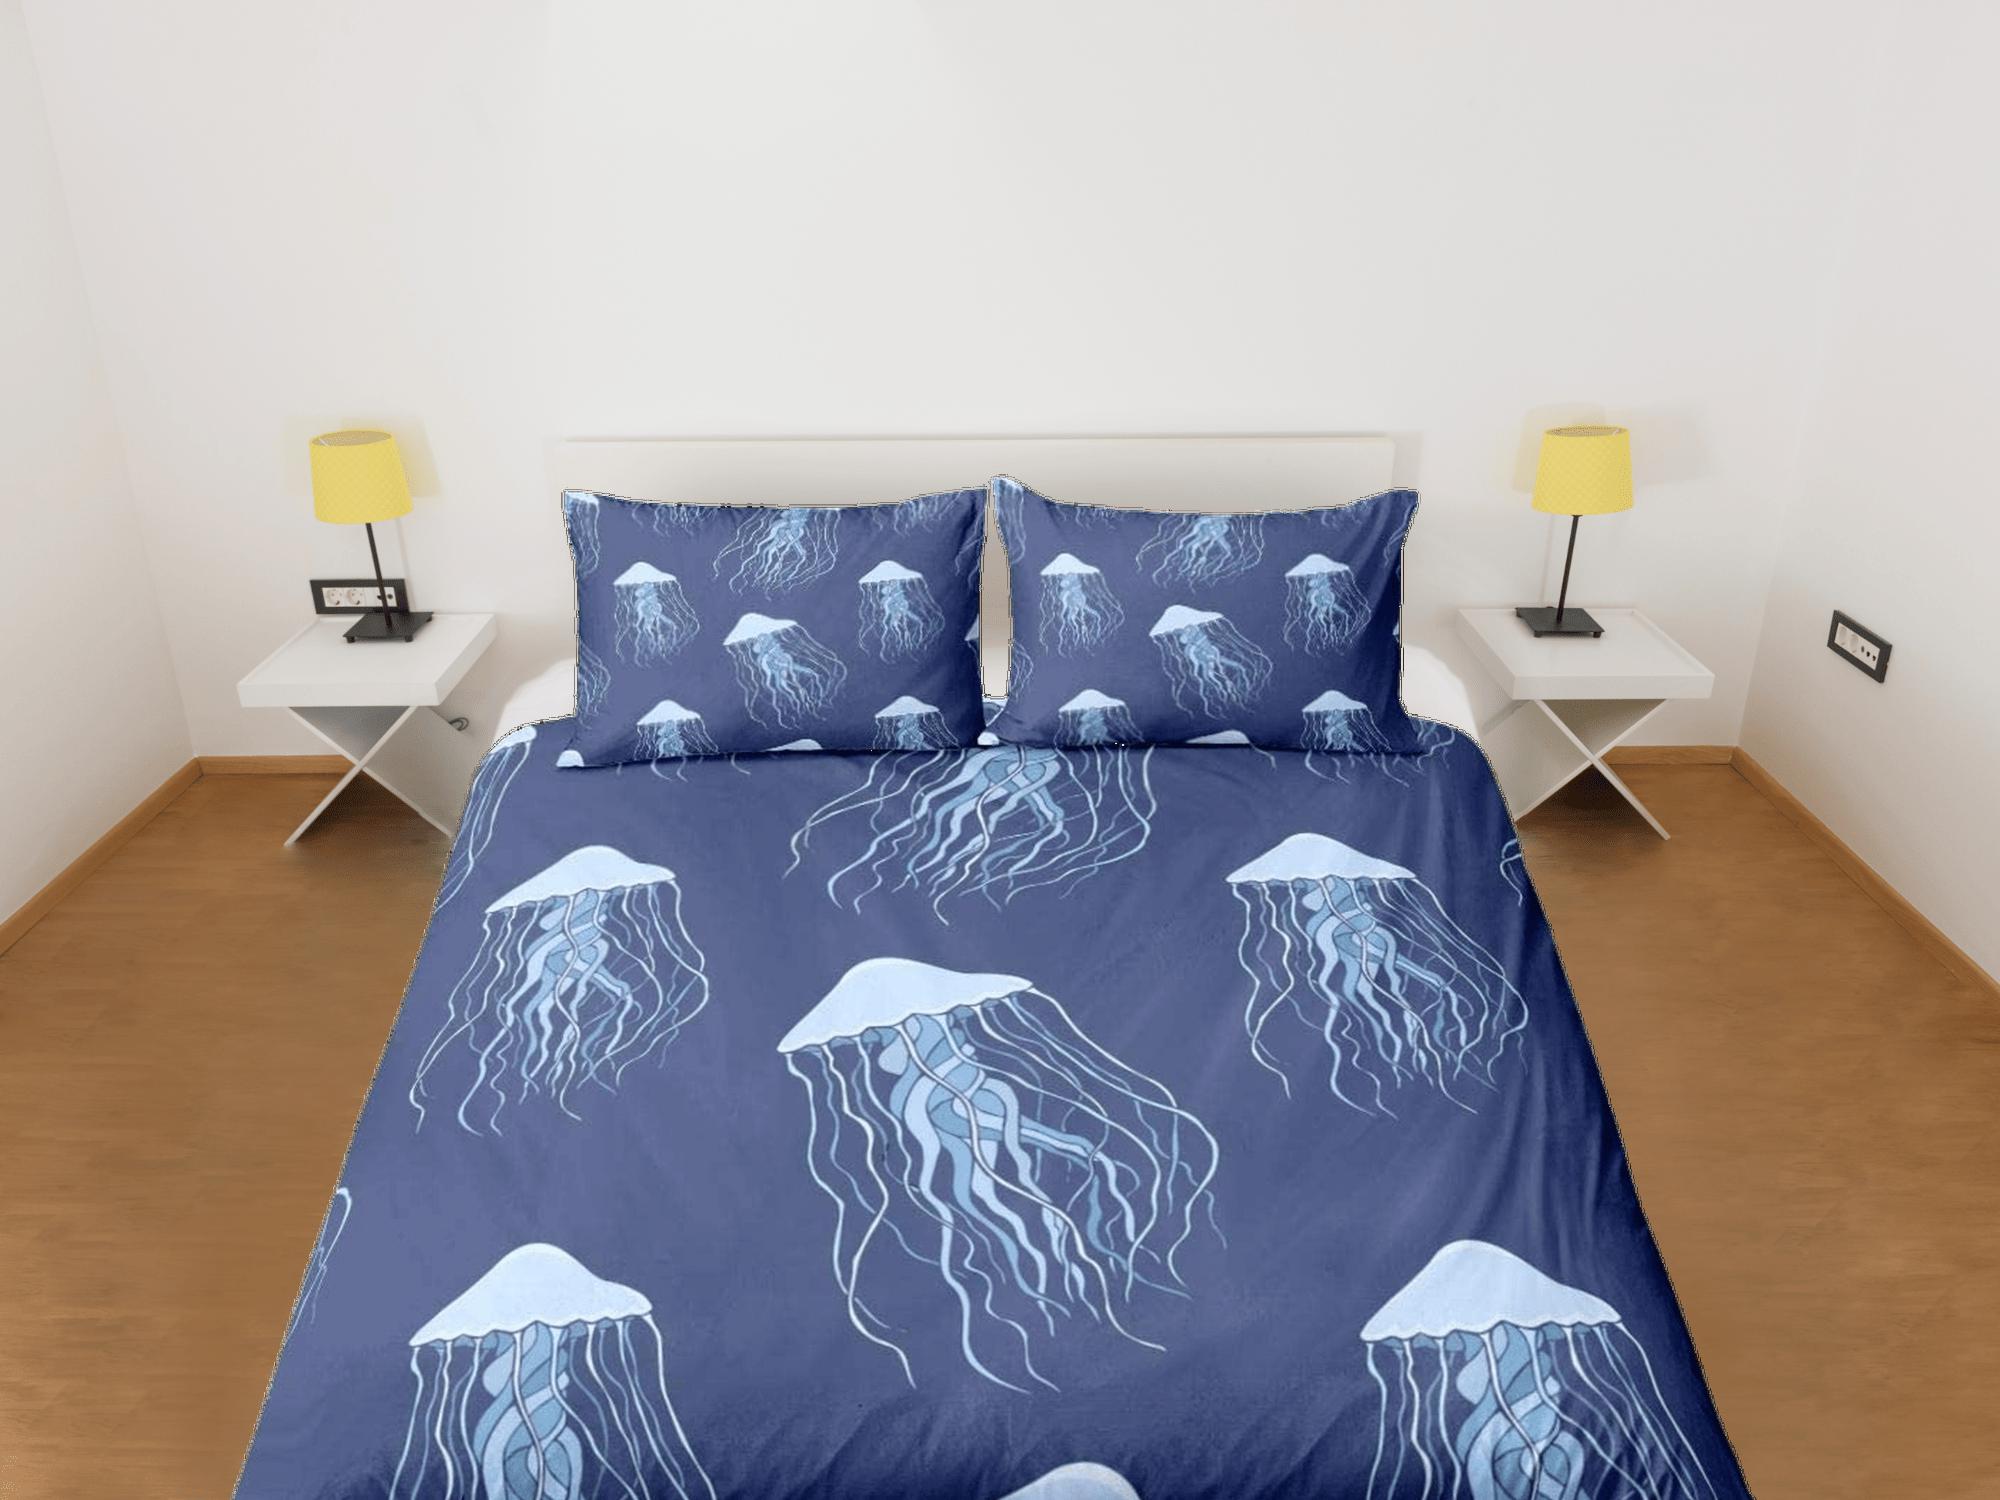 daintyduvet Jellyfish bedding denim blue duvet cover, ocean blush sea animal bedding set full king queen twin crib toddler, college dorm bedding gift